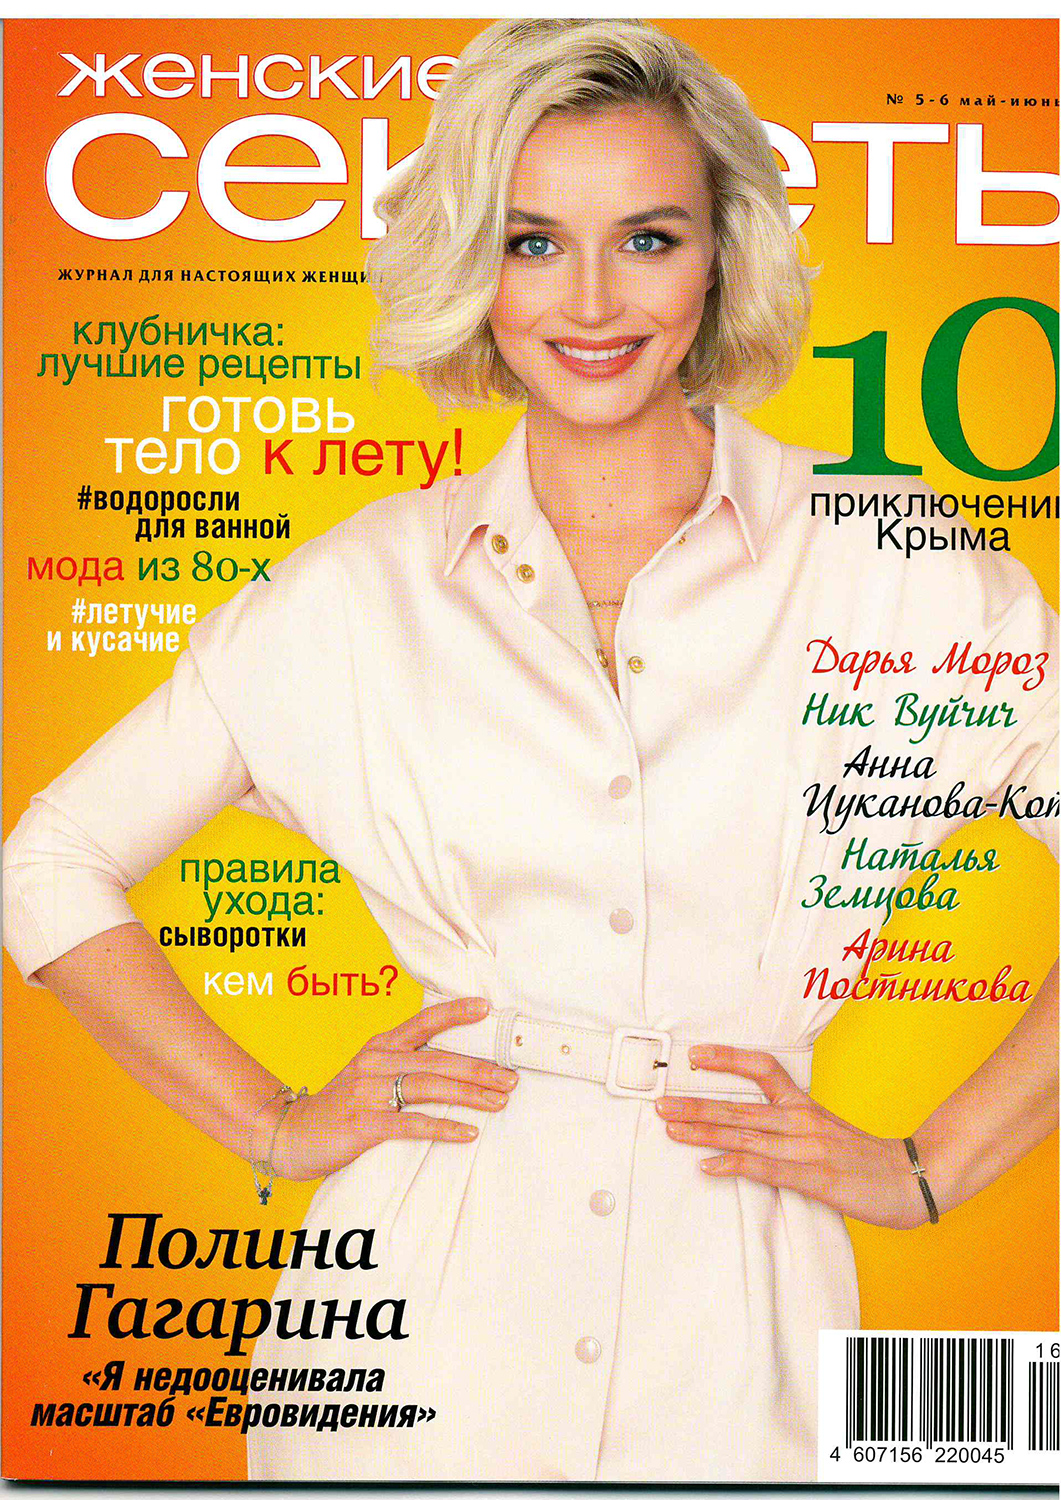 Vk magazines. Обложки женских журналов. Женщины на обложках журналов. Популярные журналы для женщин.